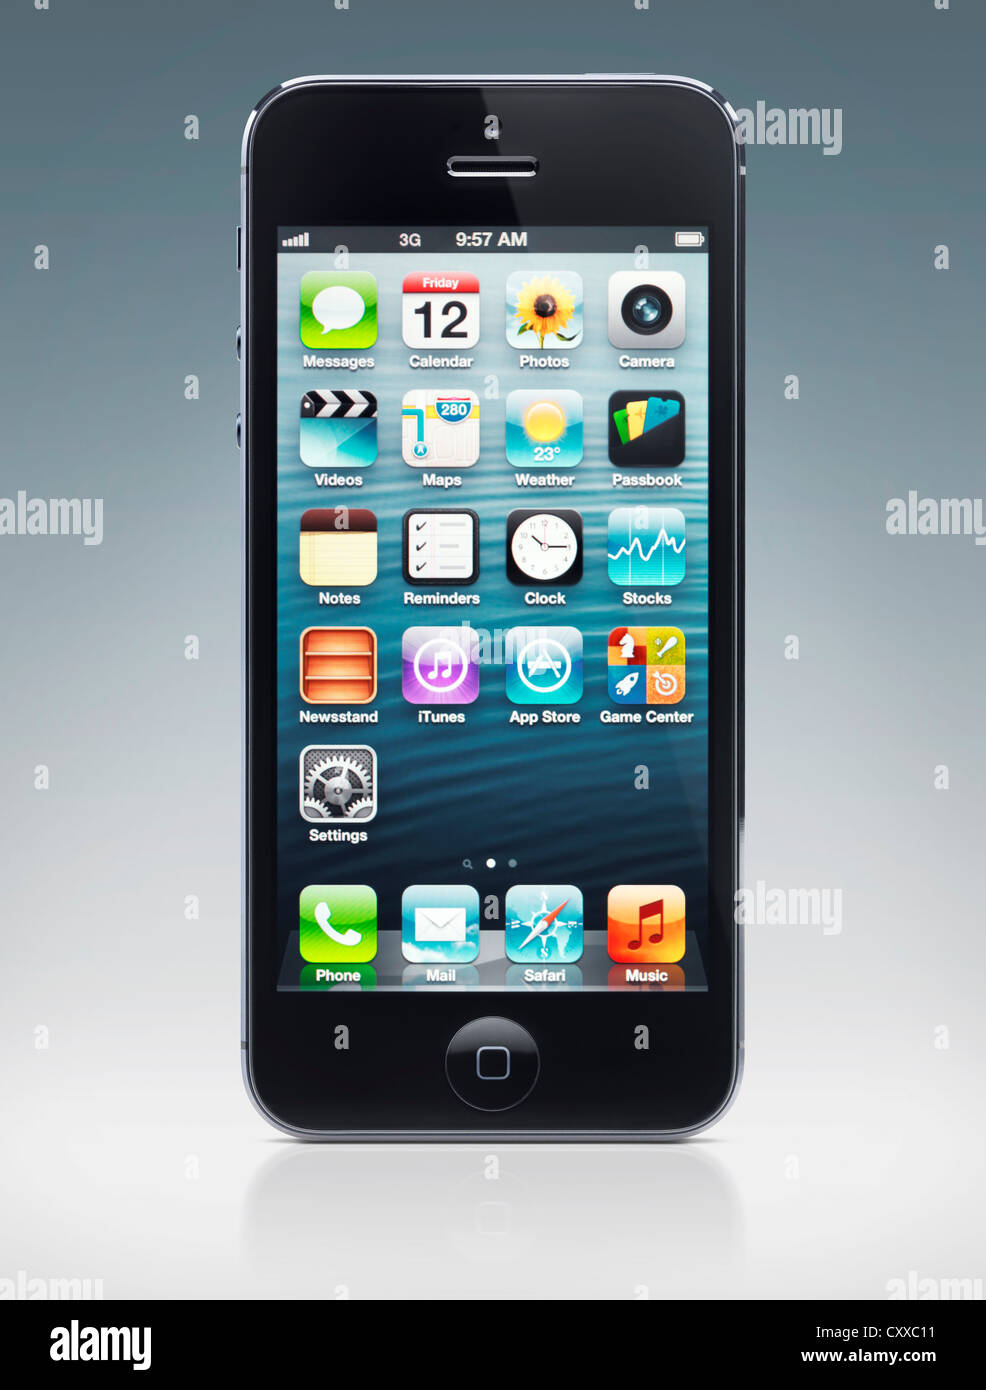 Apple Iphone 5 Schwarz Smartphone Mit Desktop Symbole Auf Dem Display Isoliert Auf Blauem Hintergrund Mit Beschneidungspfad Stockfotografie Alamy